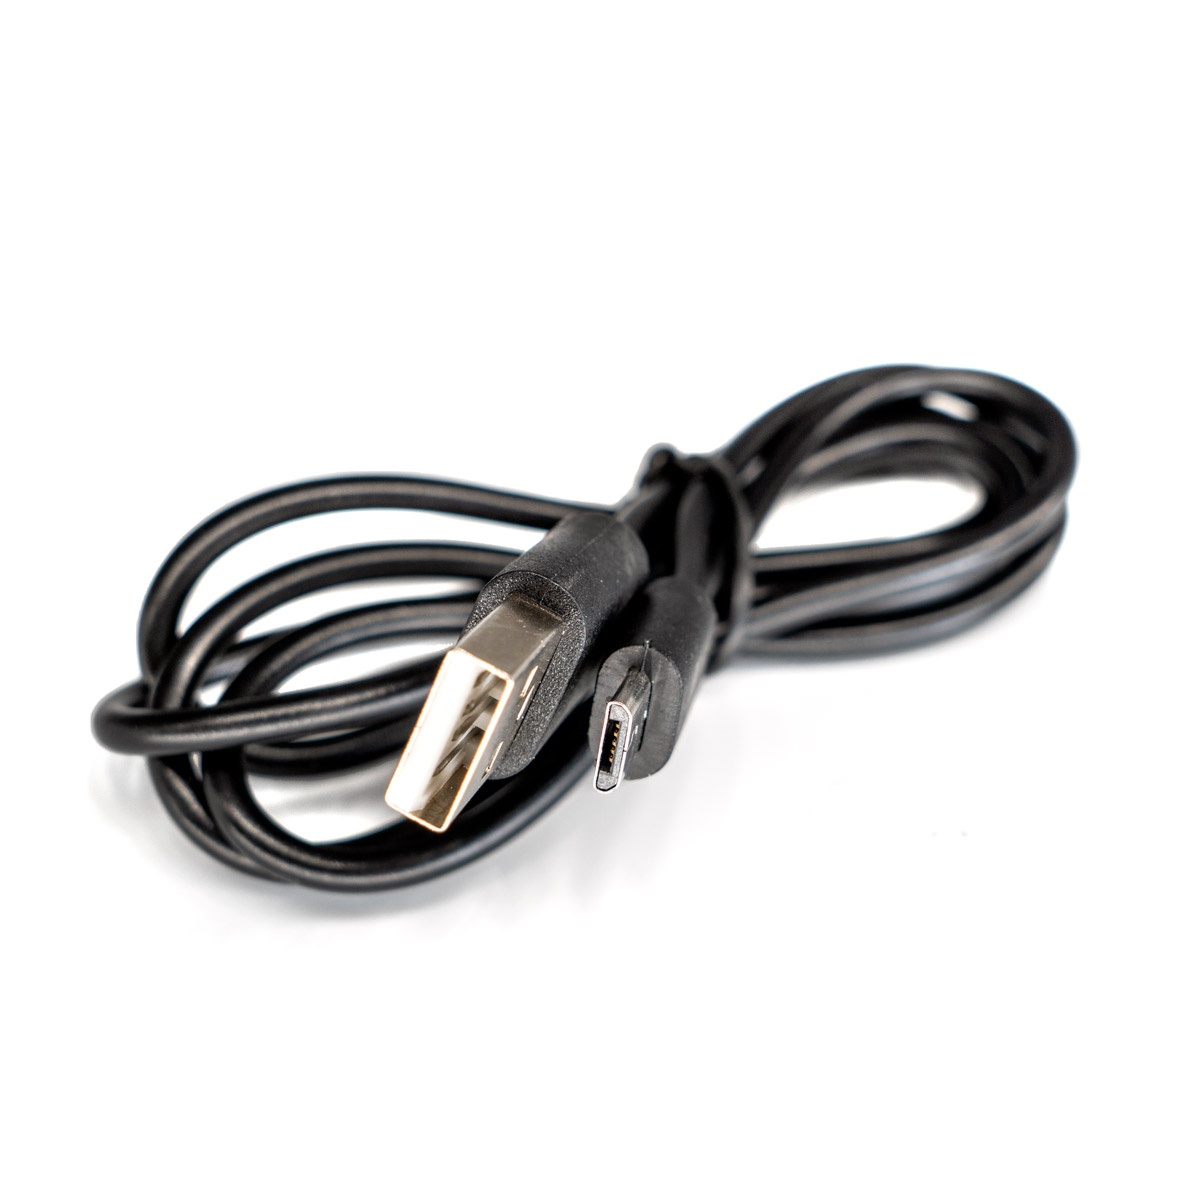 適用於 CHI Palm 的 3 英寸微型 USB 電纜